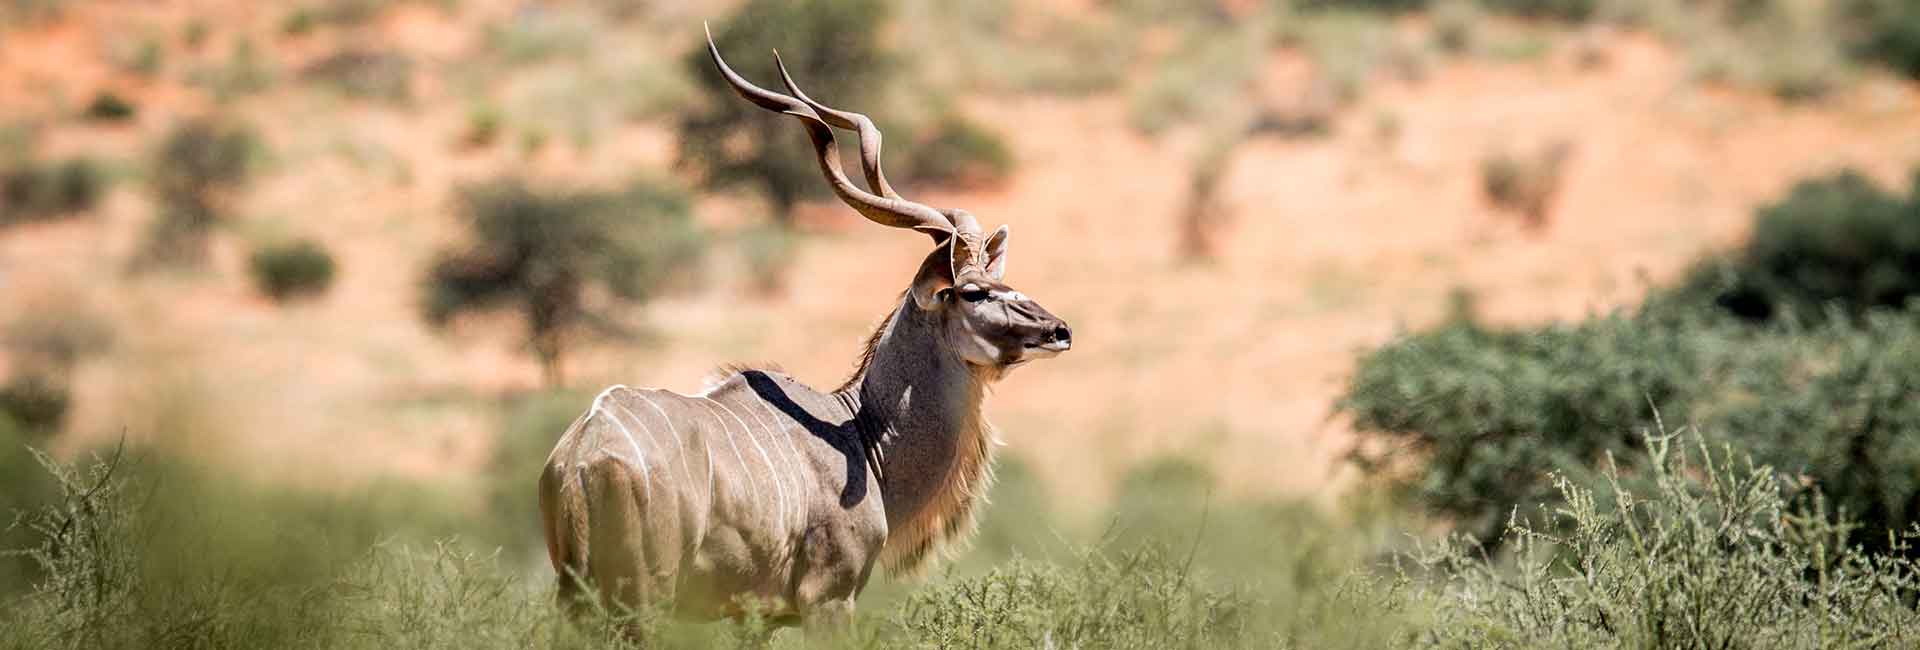 kudu-hunting-somerby-safaris-banner